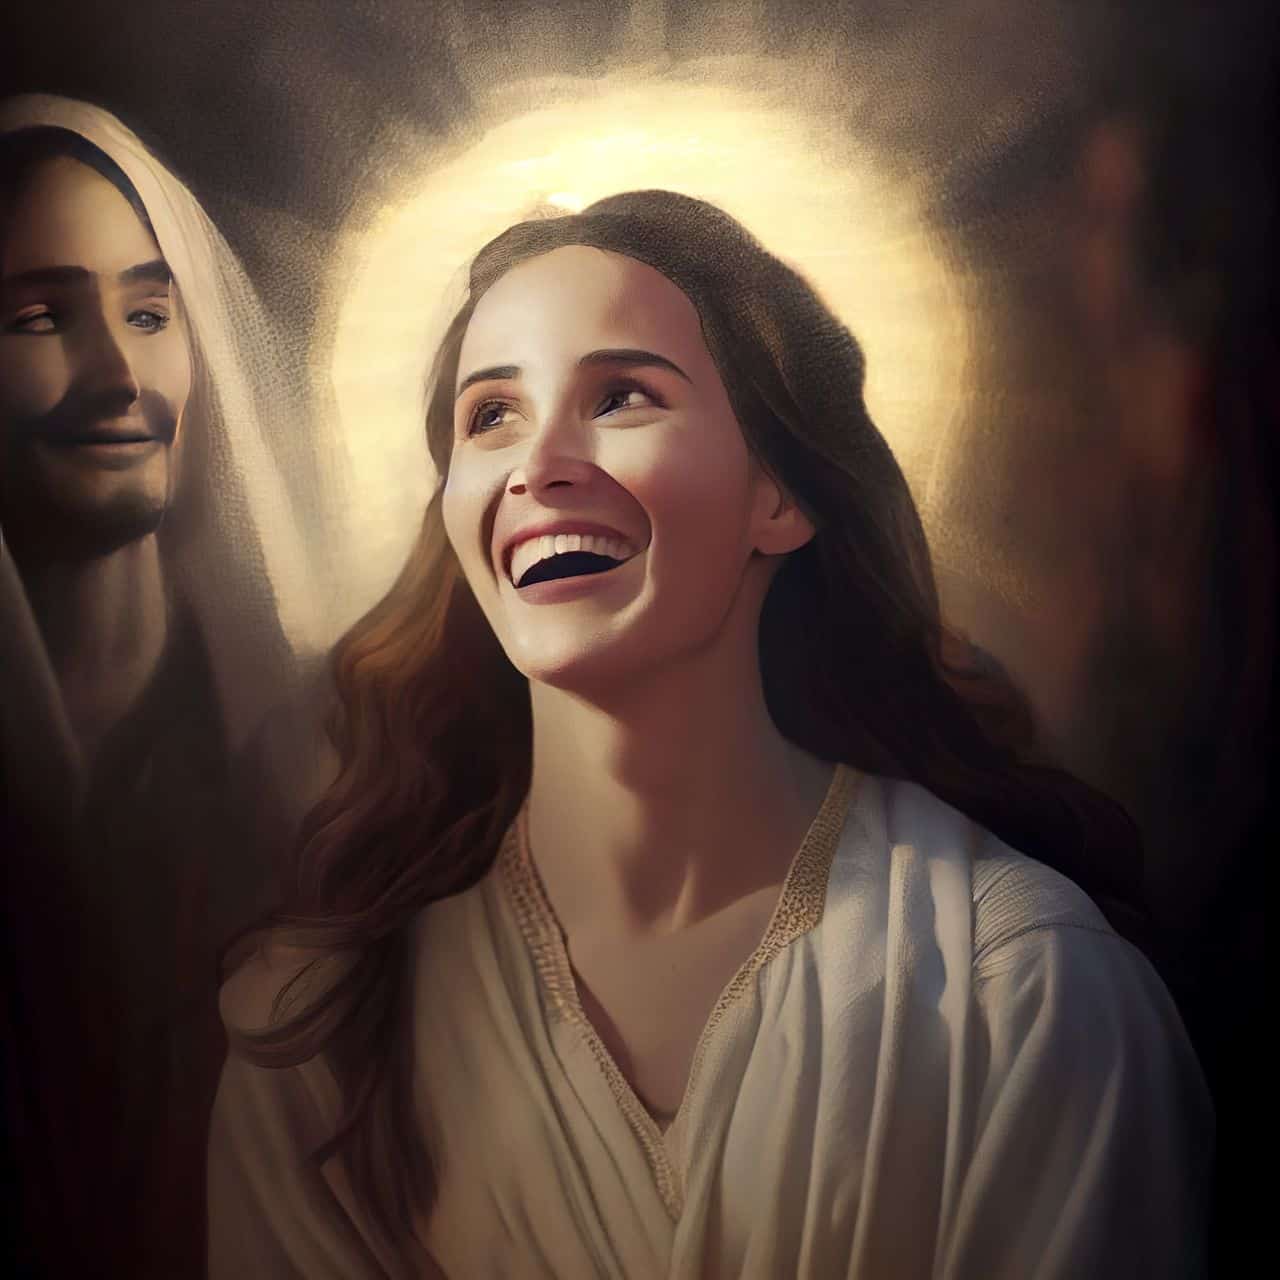 woman smiling at jesus